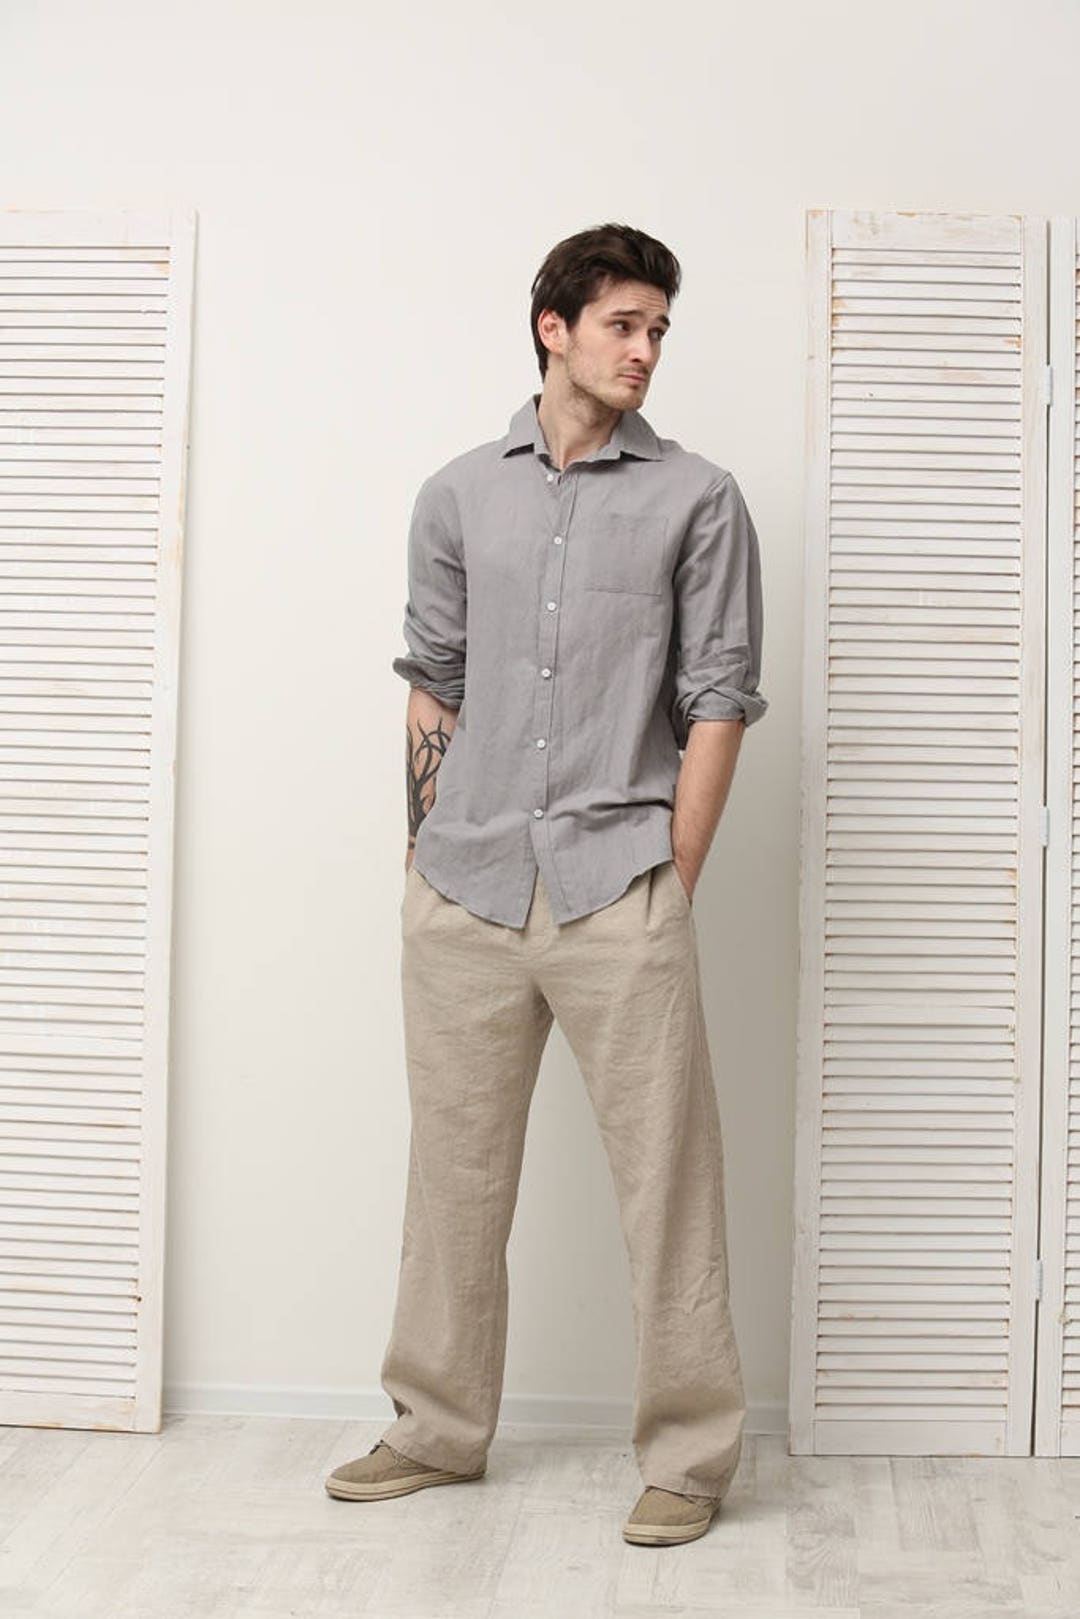 How To Wear Linen Pants – The Amisy Company